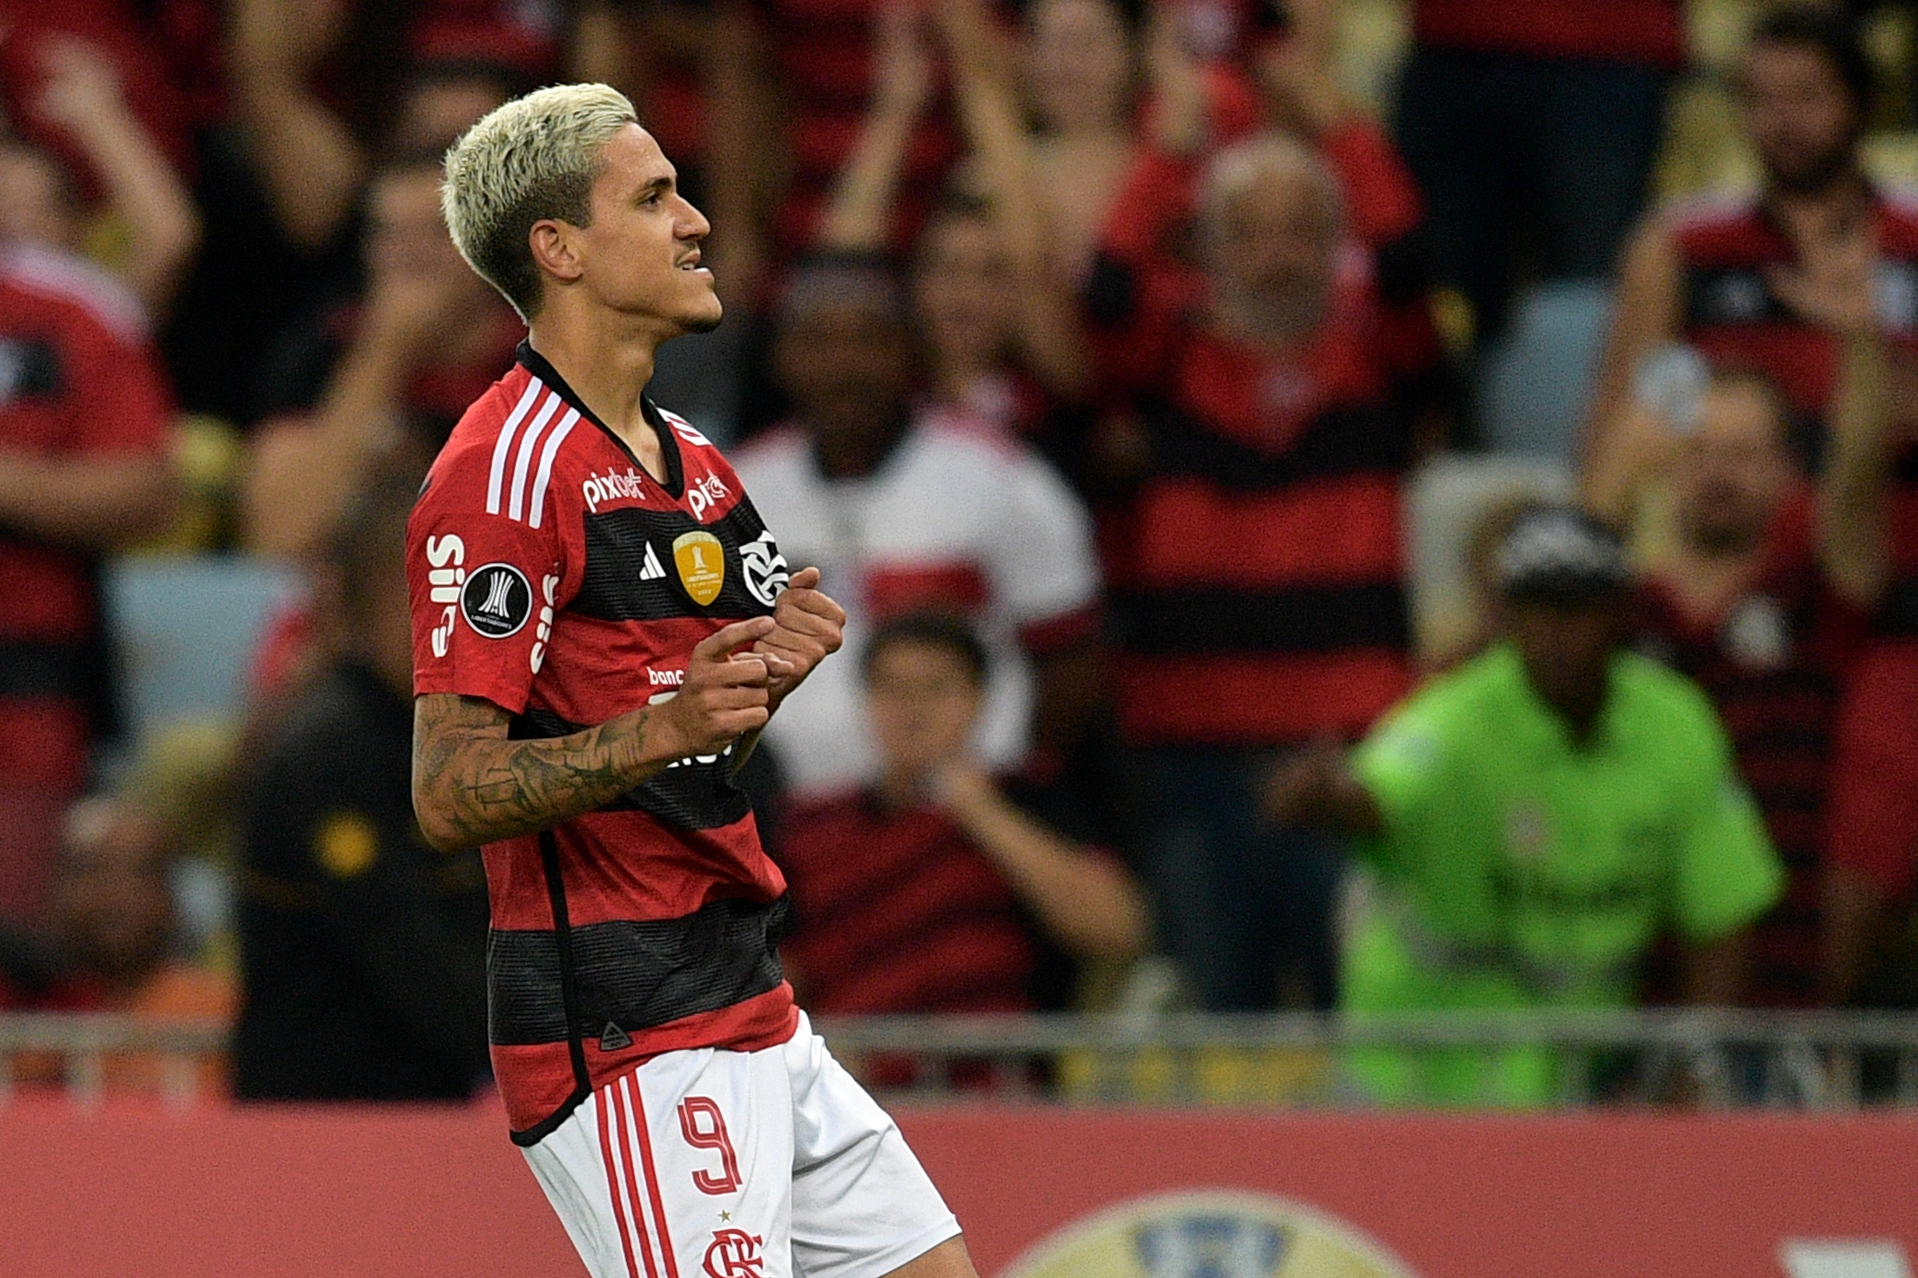 Pedro marcou o primeiro gol do Flamengo contra o Aucas (Foto: Carl de Souza | AFP via Getty Images)